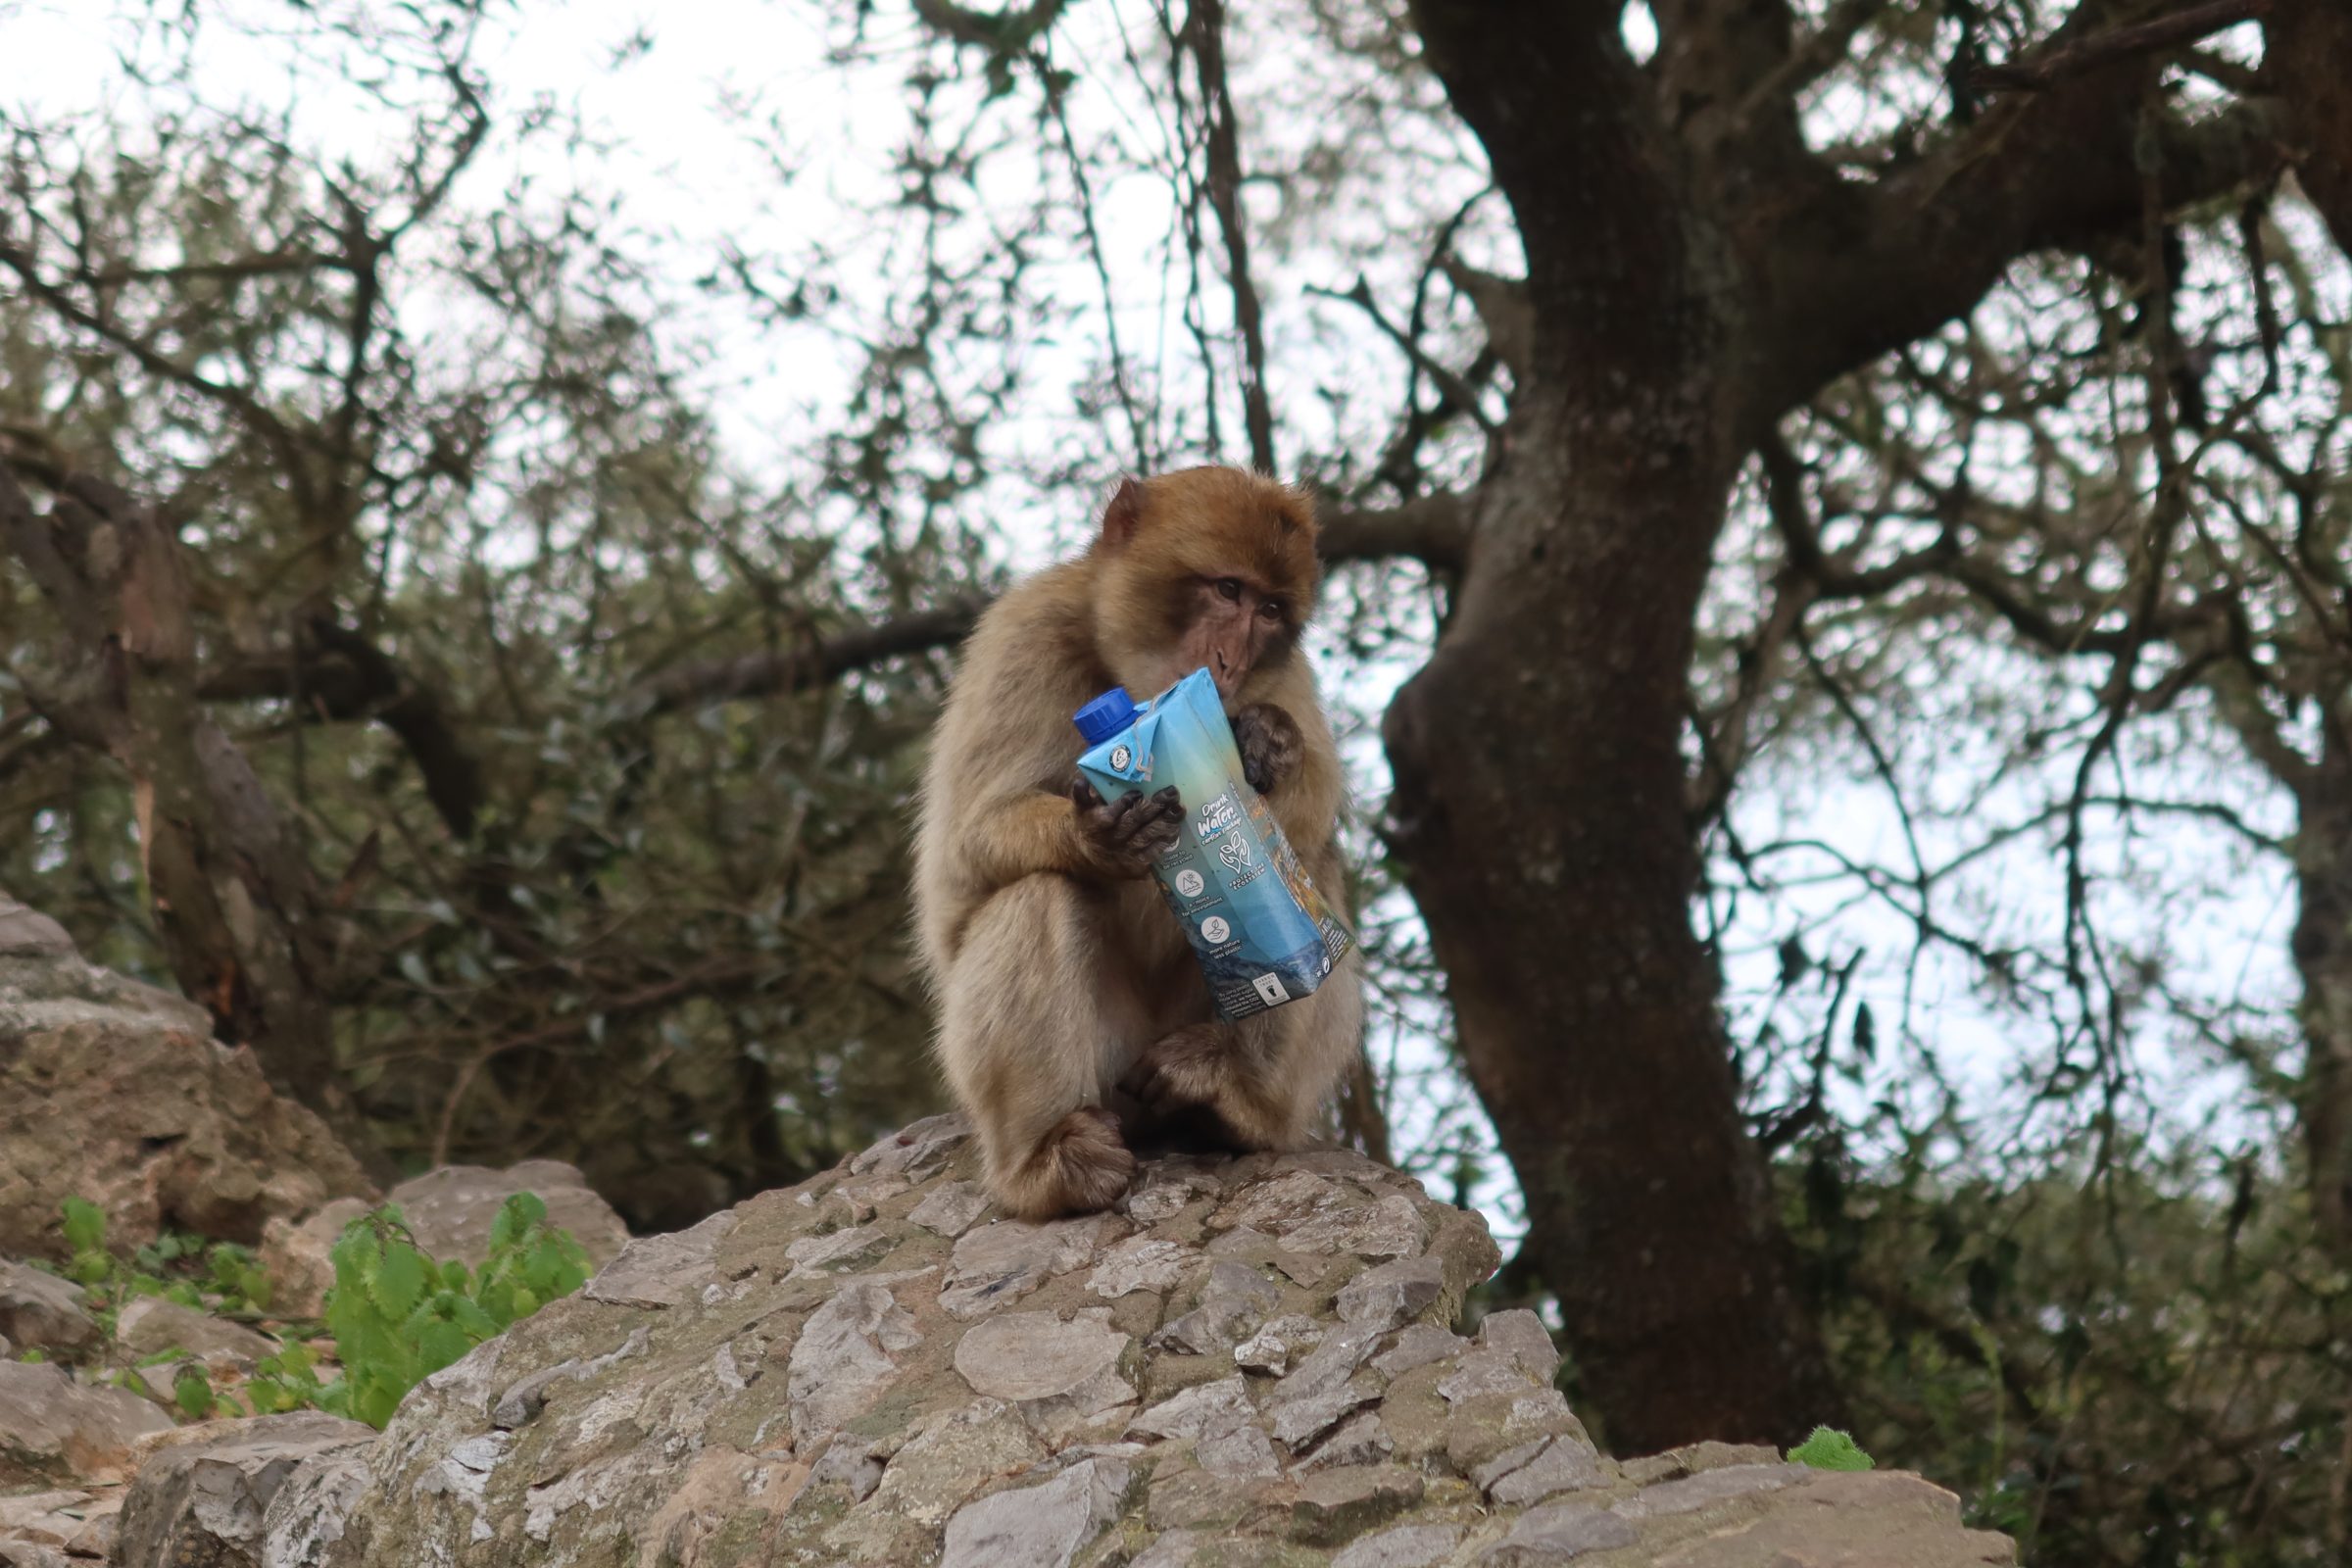 Loslopende apen op de Rots van Gibraltar | Camper tips en bezienswaardigheden Zuid-Spanje